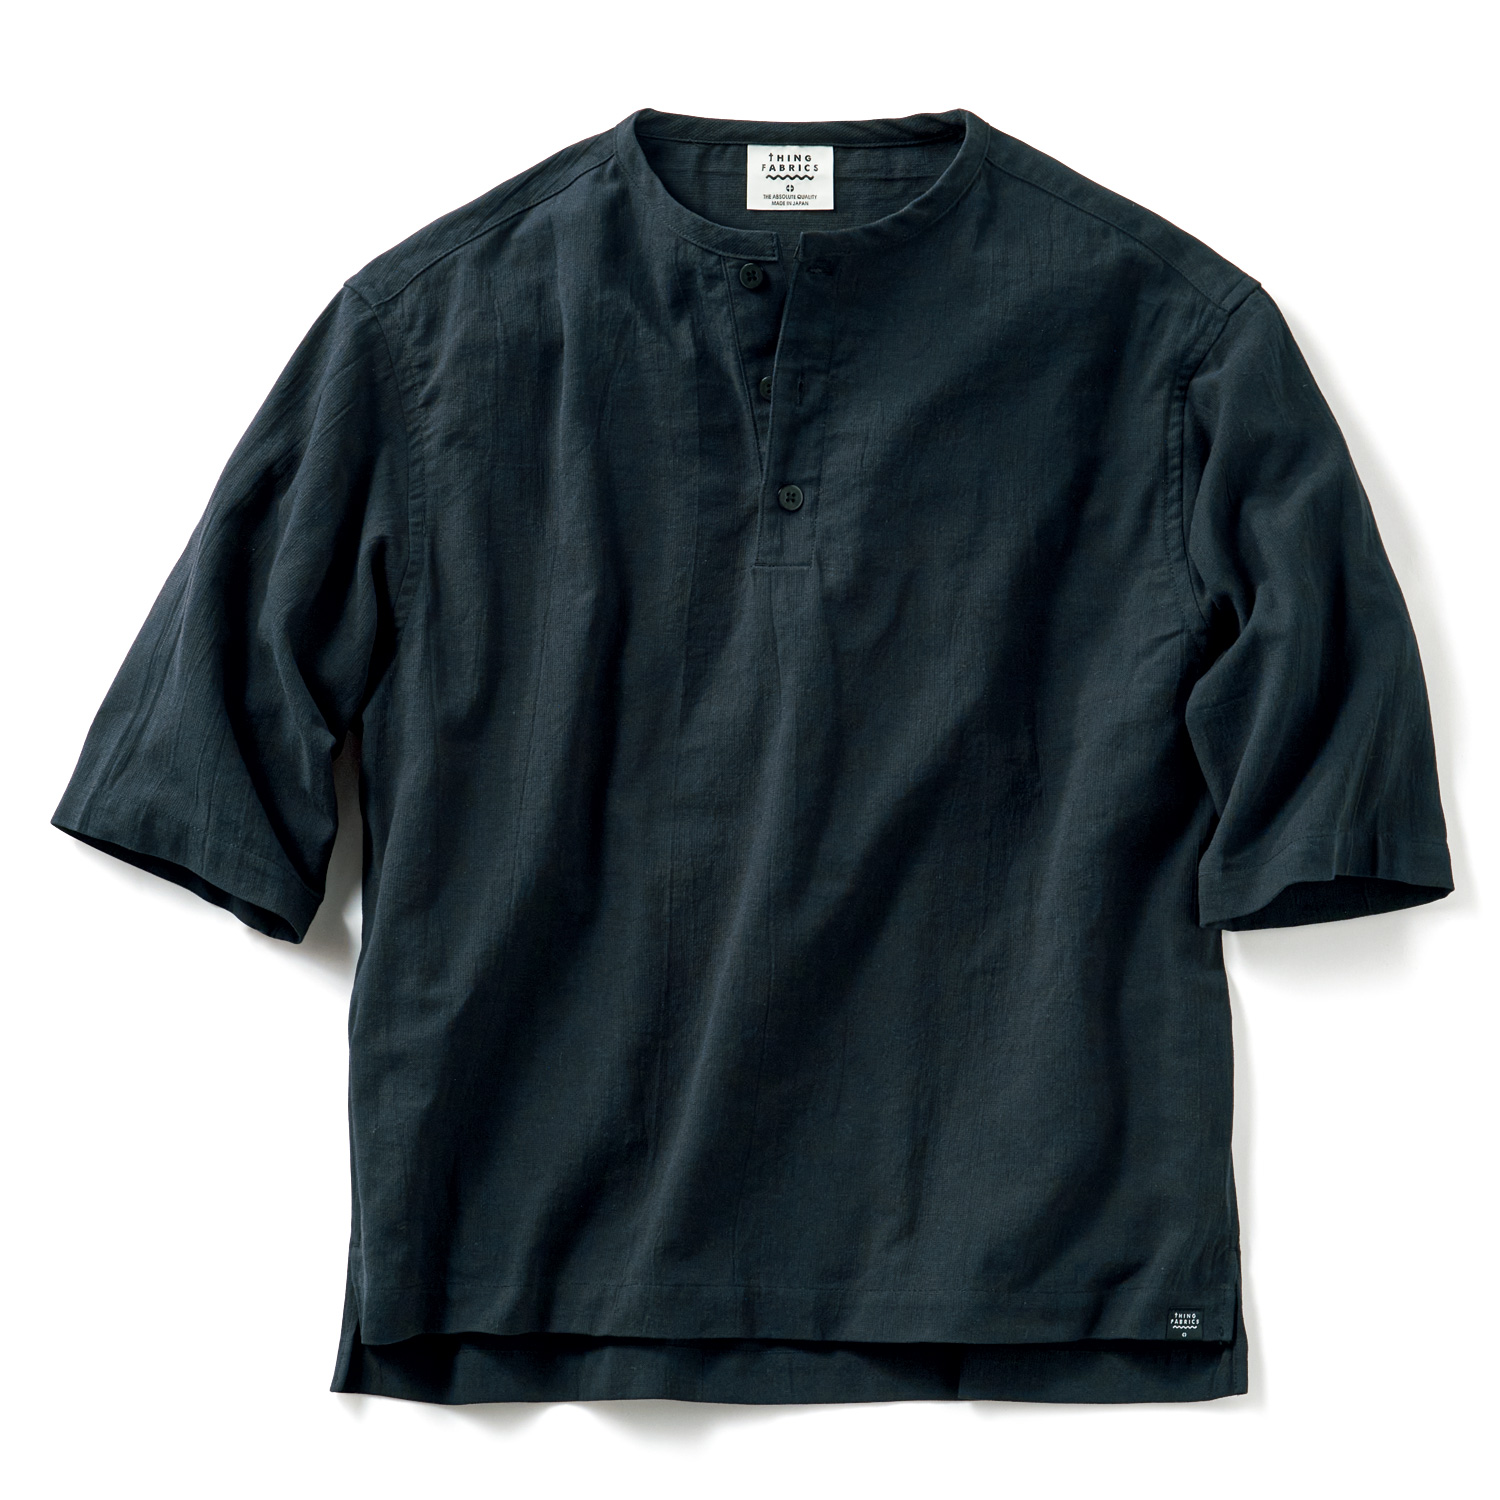 タオル織機のゆったりヘンリーネック七分袖シャツ